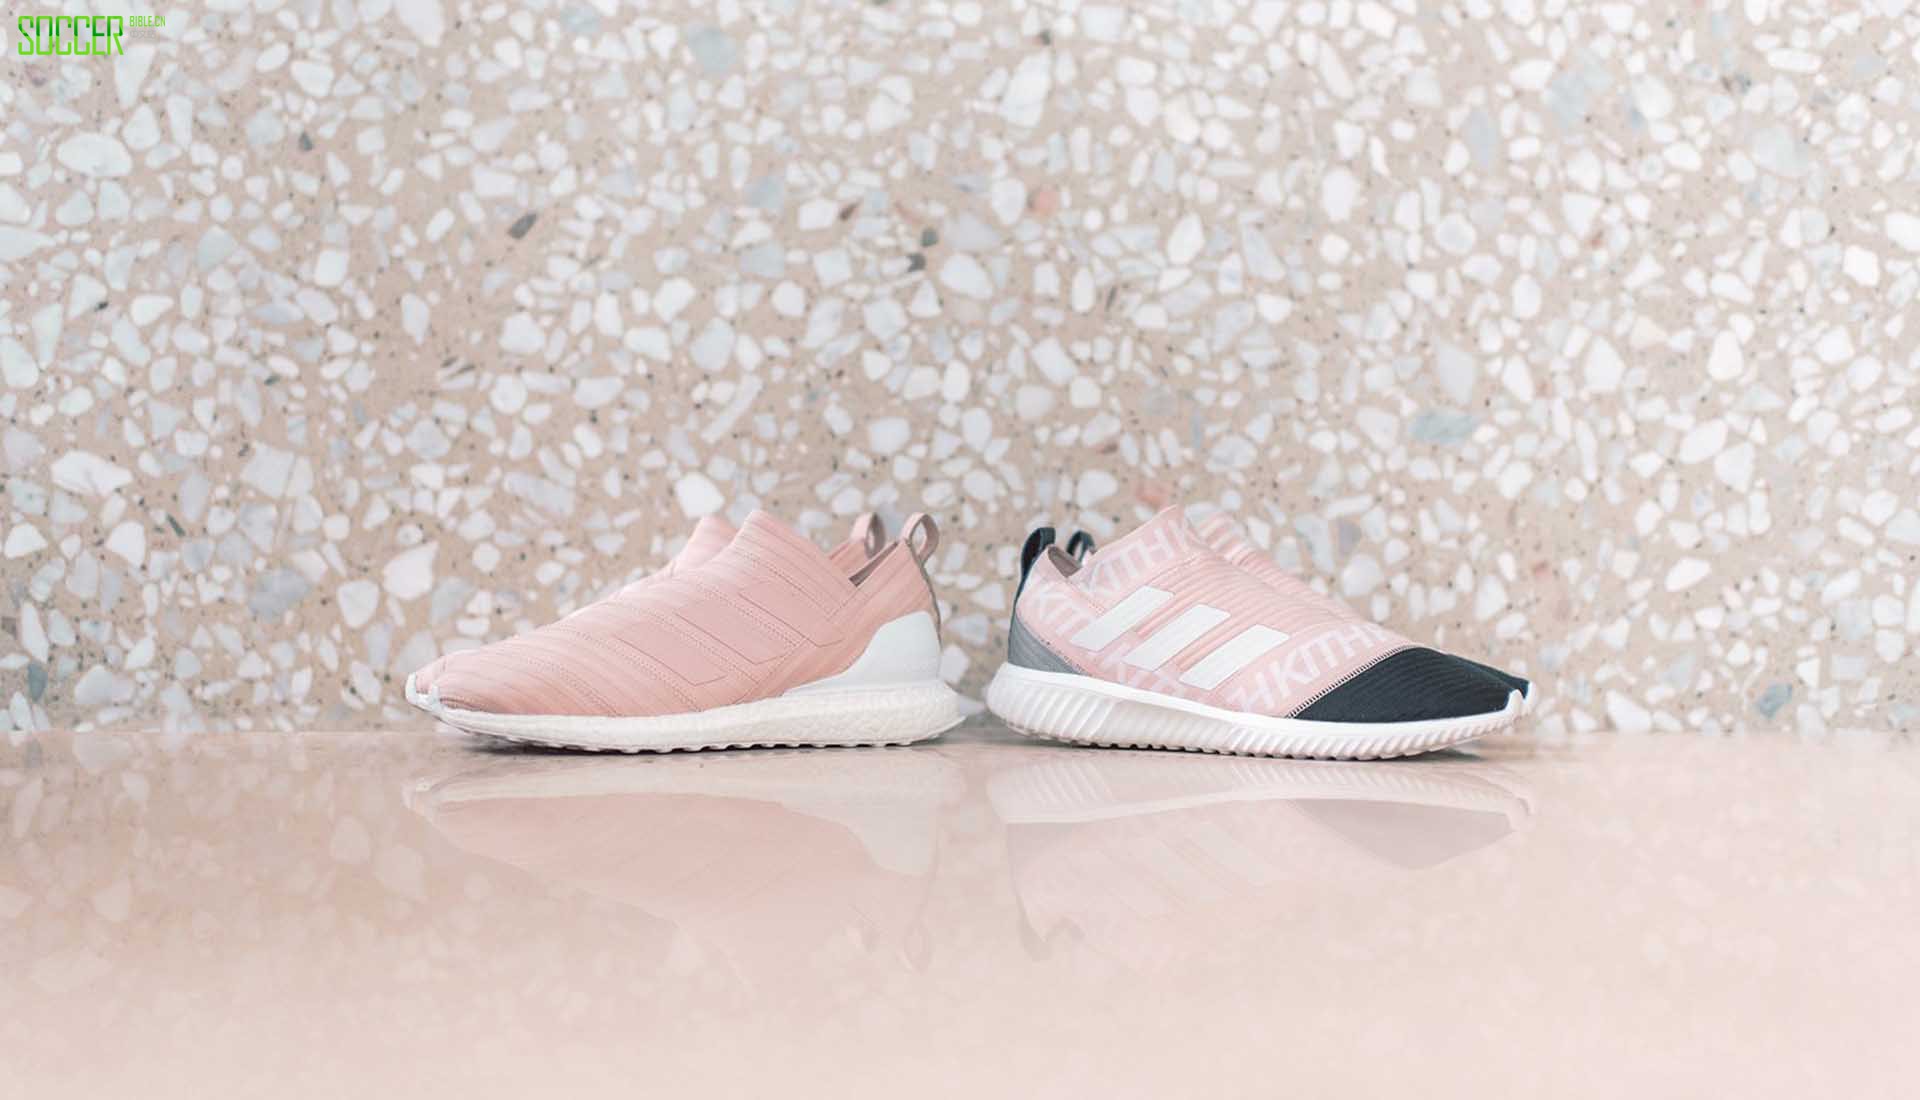 20-flamingos-kith-adidas-season-ii